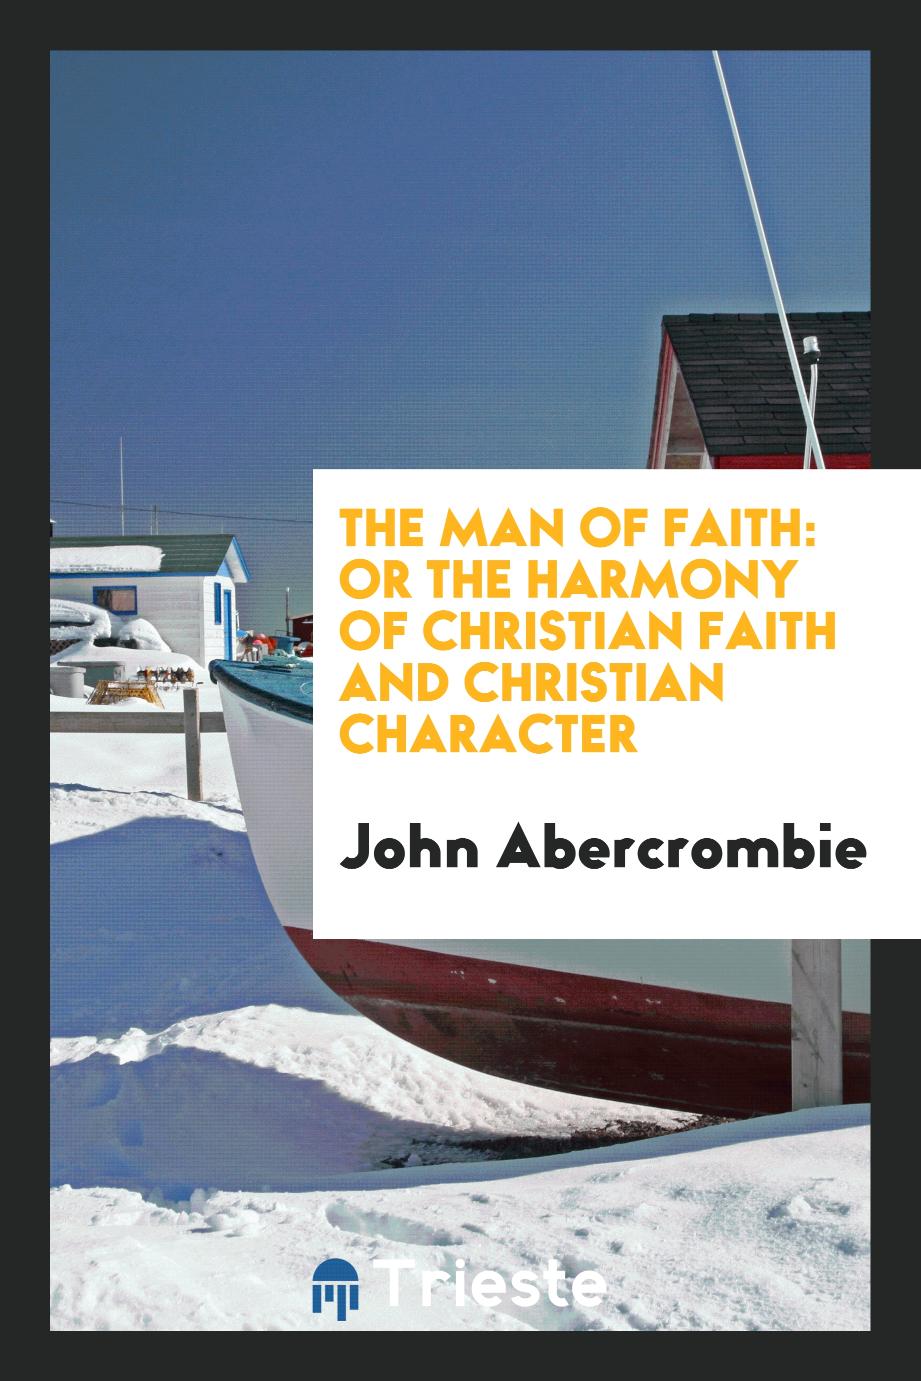 The Man of Faith: Or the Harmony of Christian Faith and Christian Character